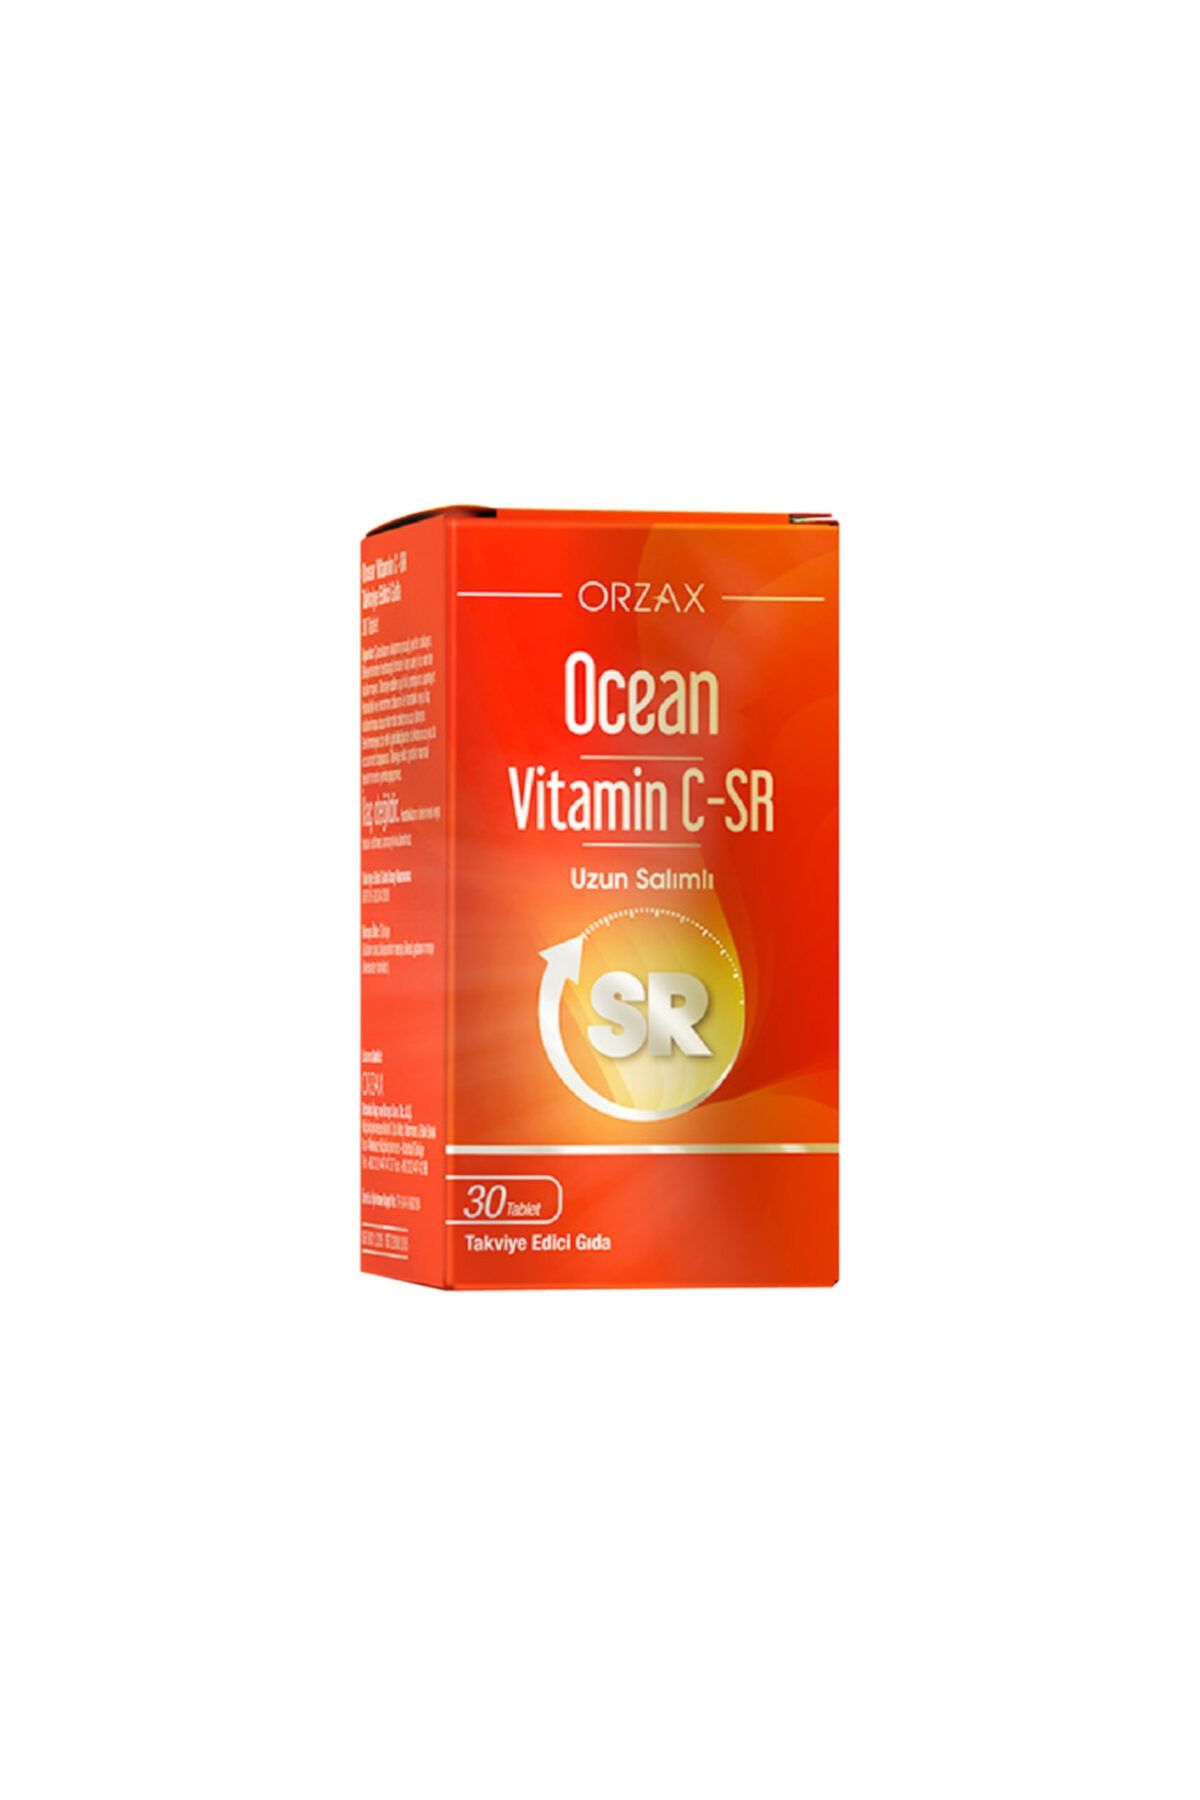 Ocean Vitamin C-sr 500 Mg 30 Tablet Uzun Salınımlı